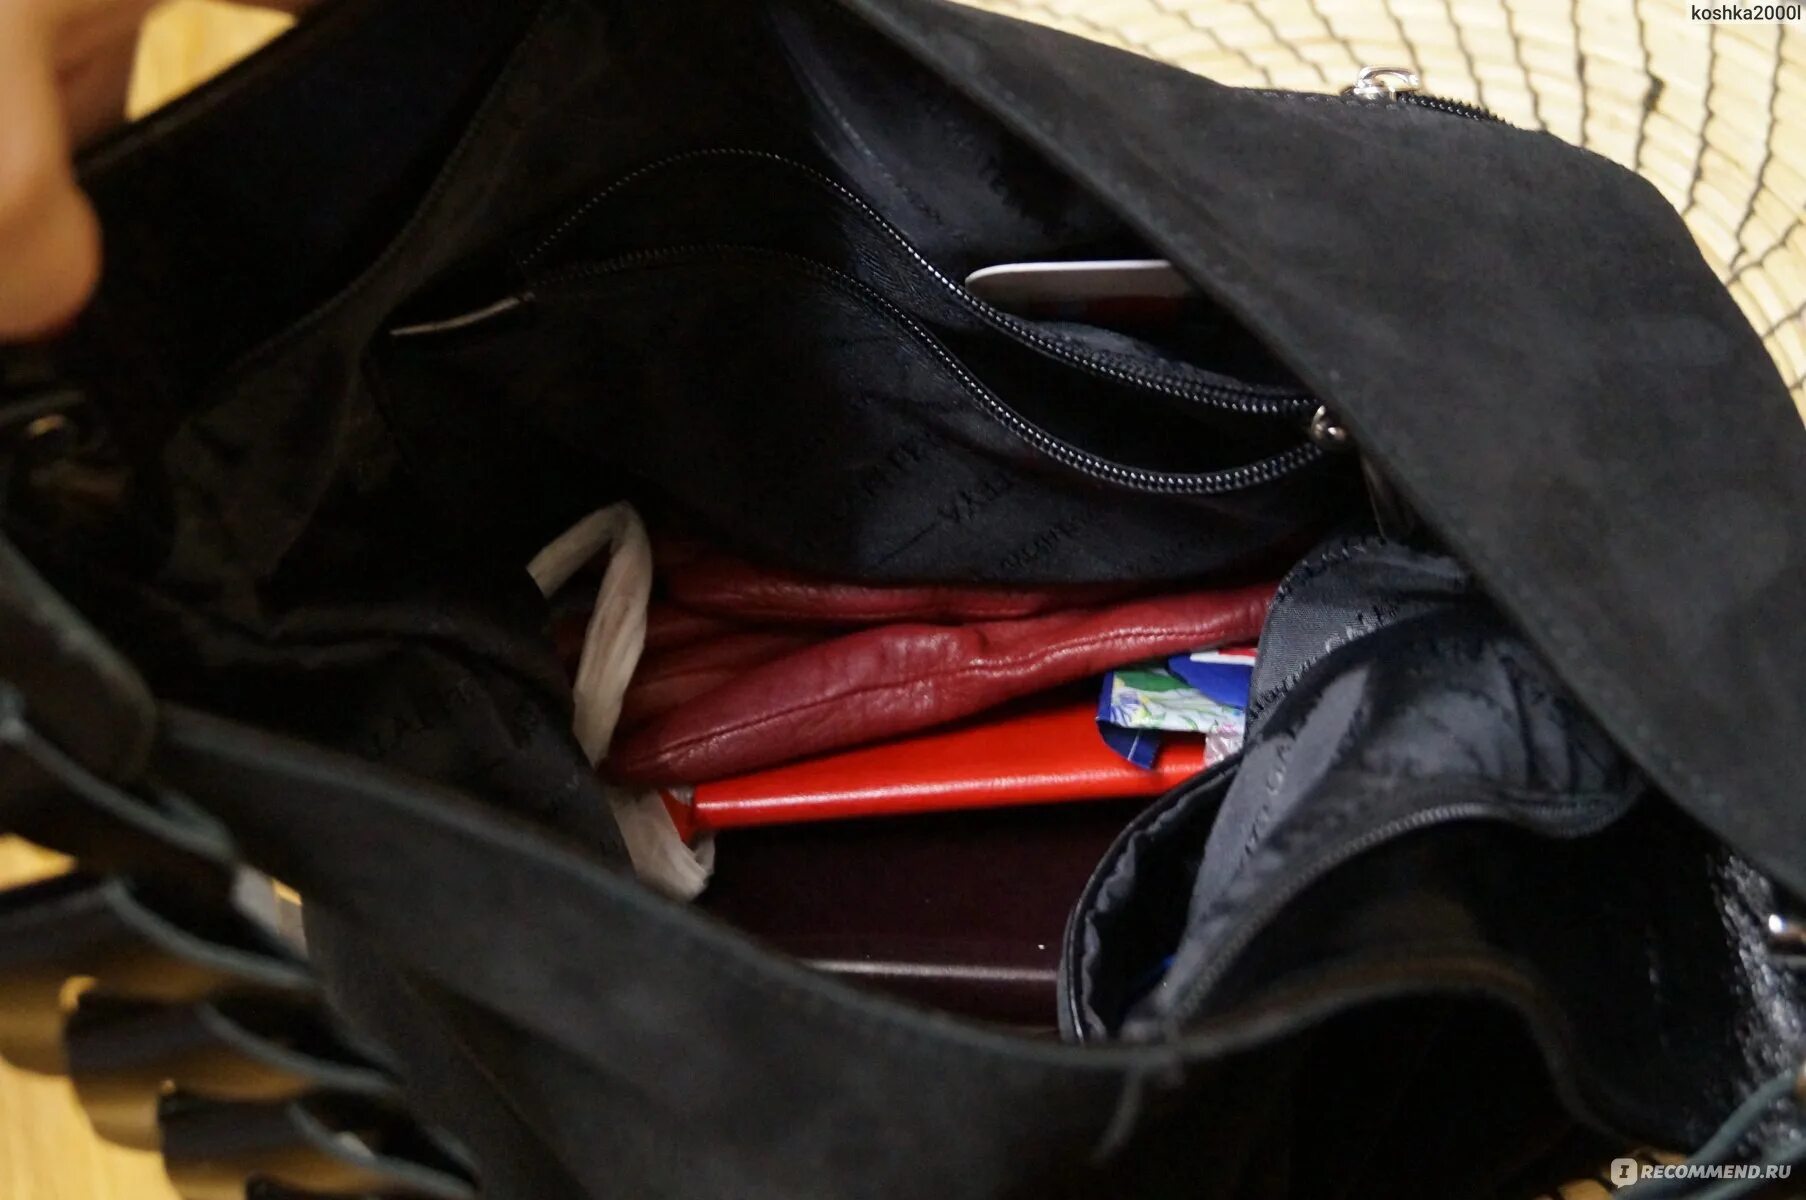 Открыл кошелку достал. Открыла кошелочку достала сумочку. Девочка вытаскивает из сумки куртку с карманами. Девочка достает из сумки книгу. Открываем кошелочку достала сумочку анекдот.